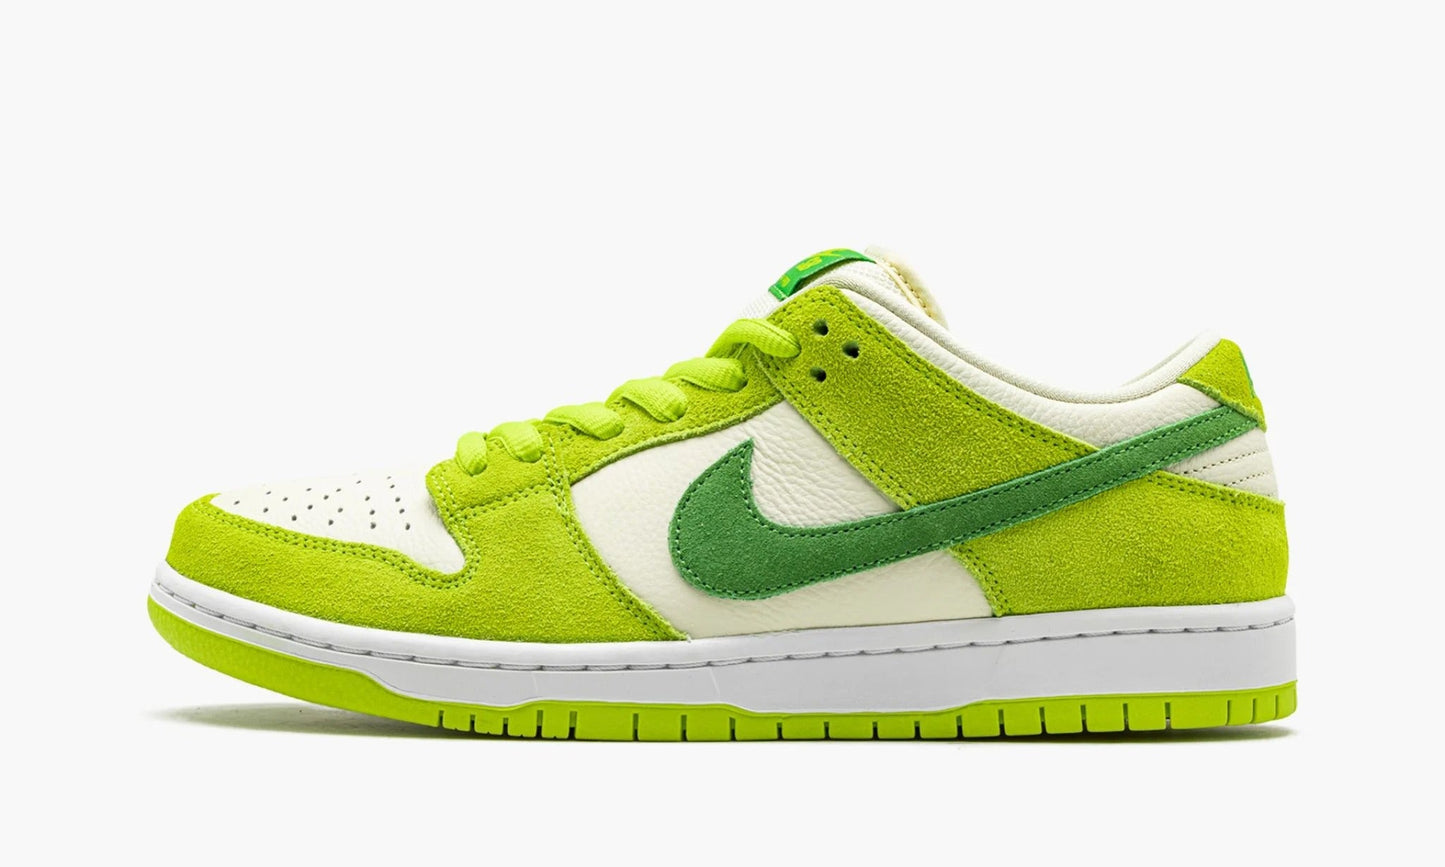 Nike Dunk SB Low "Green Apple" - DM0807-300 | Grailshop